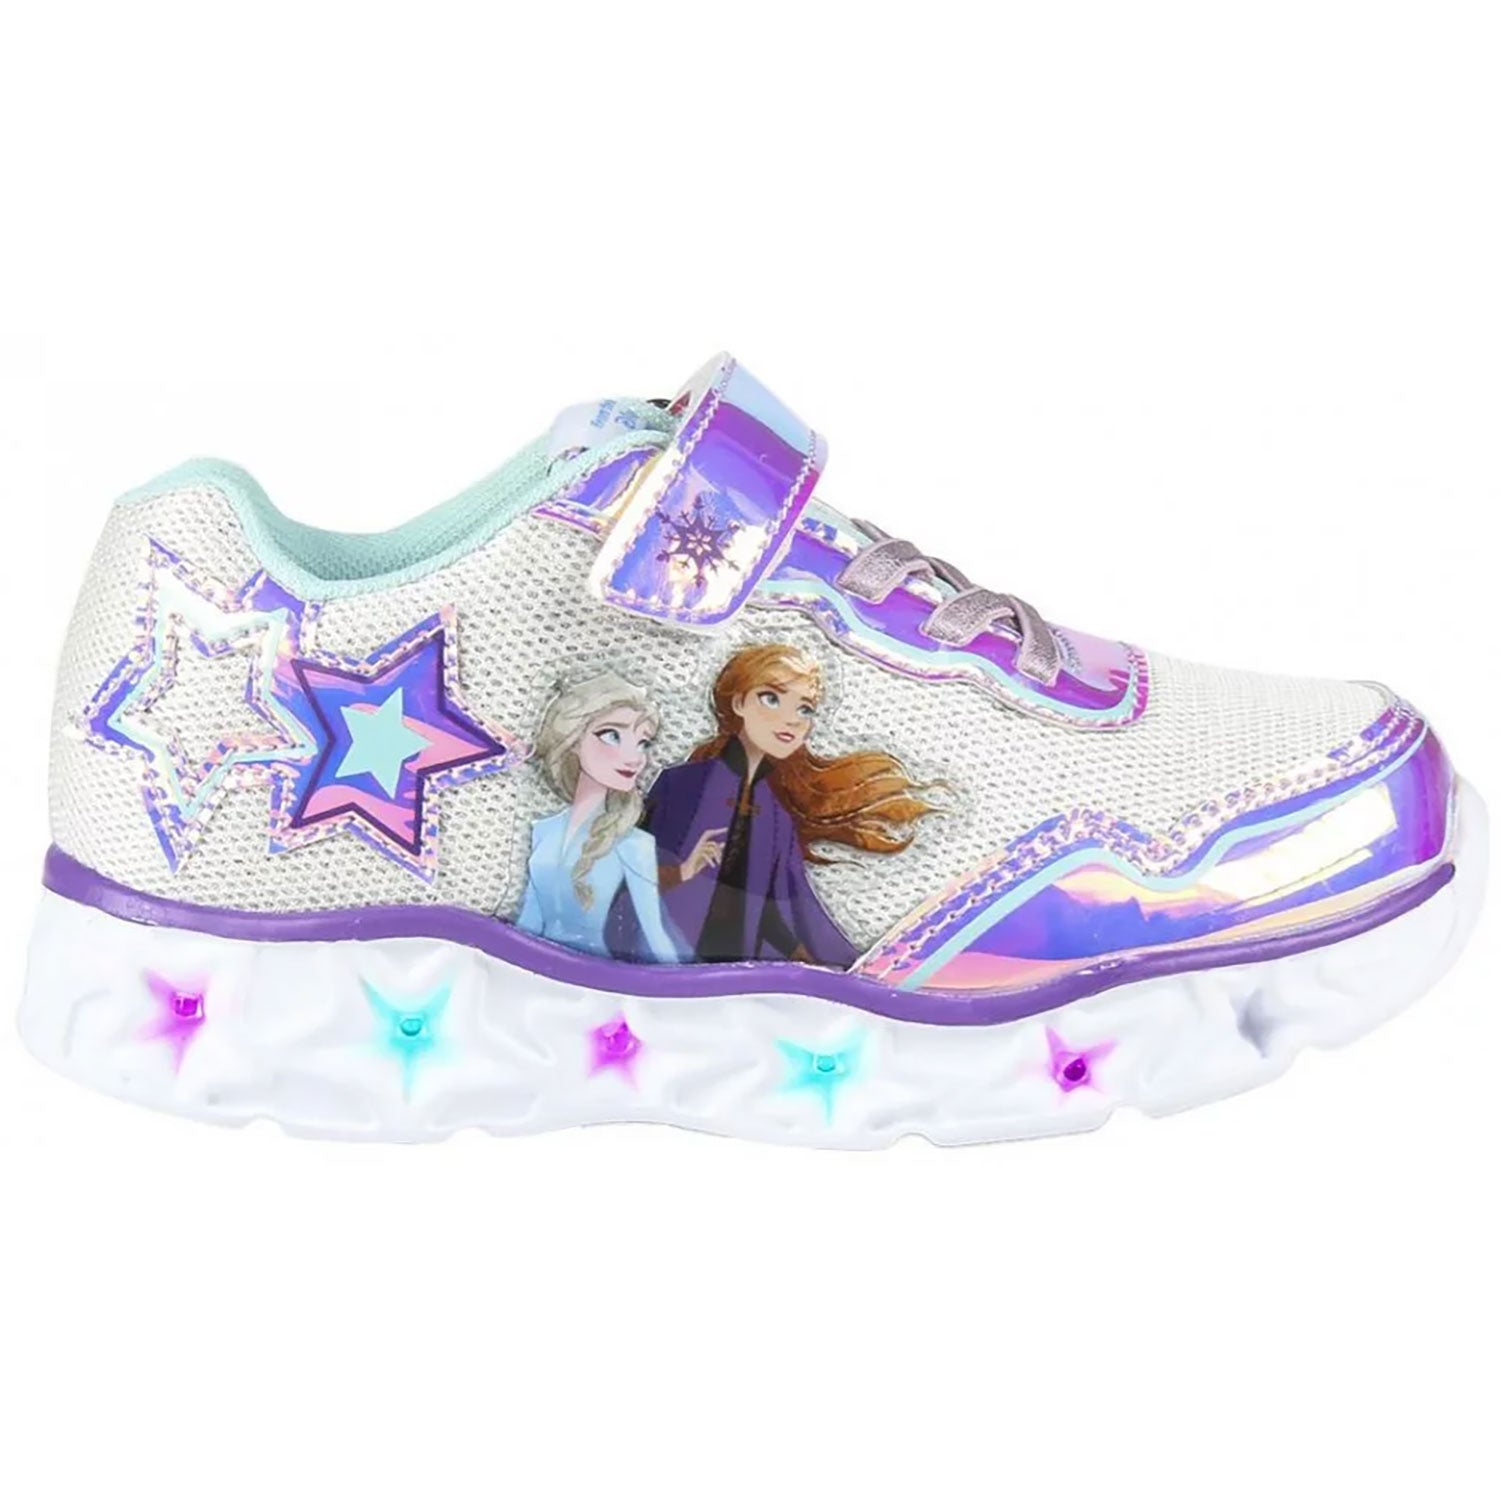 Scarpe sportive Disney Frozen Elsa a strappo per bambina con luci led 4960